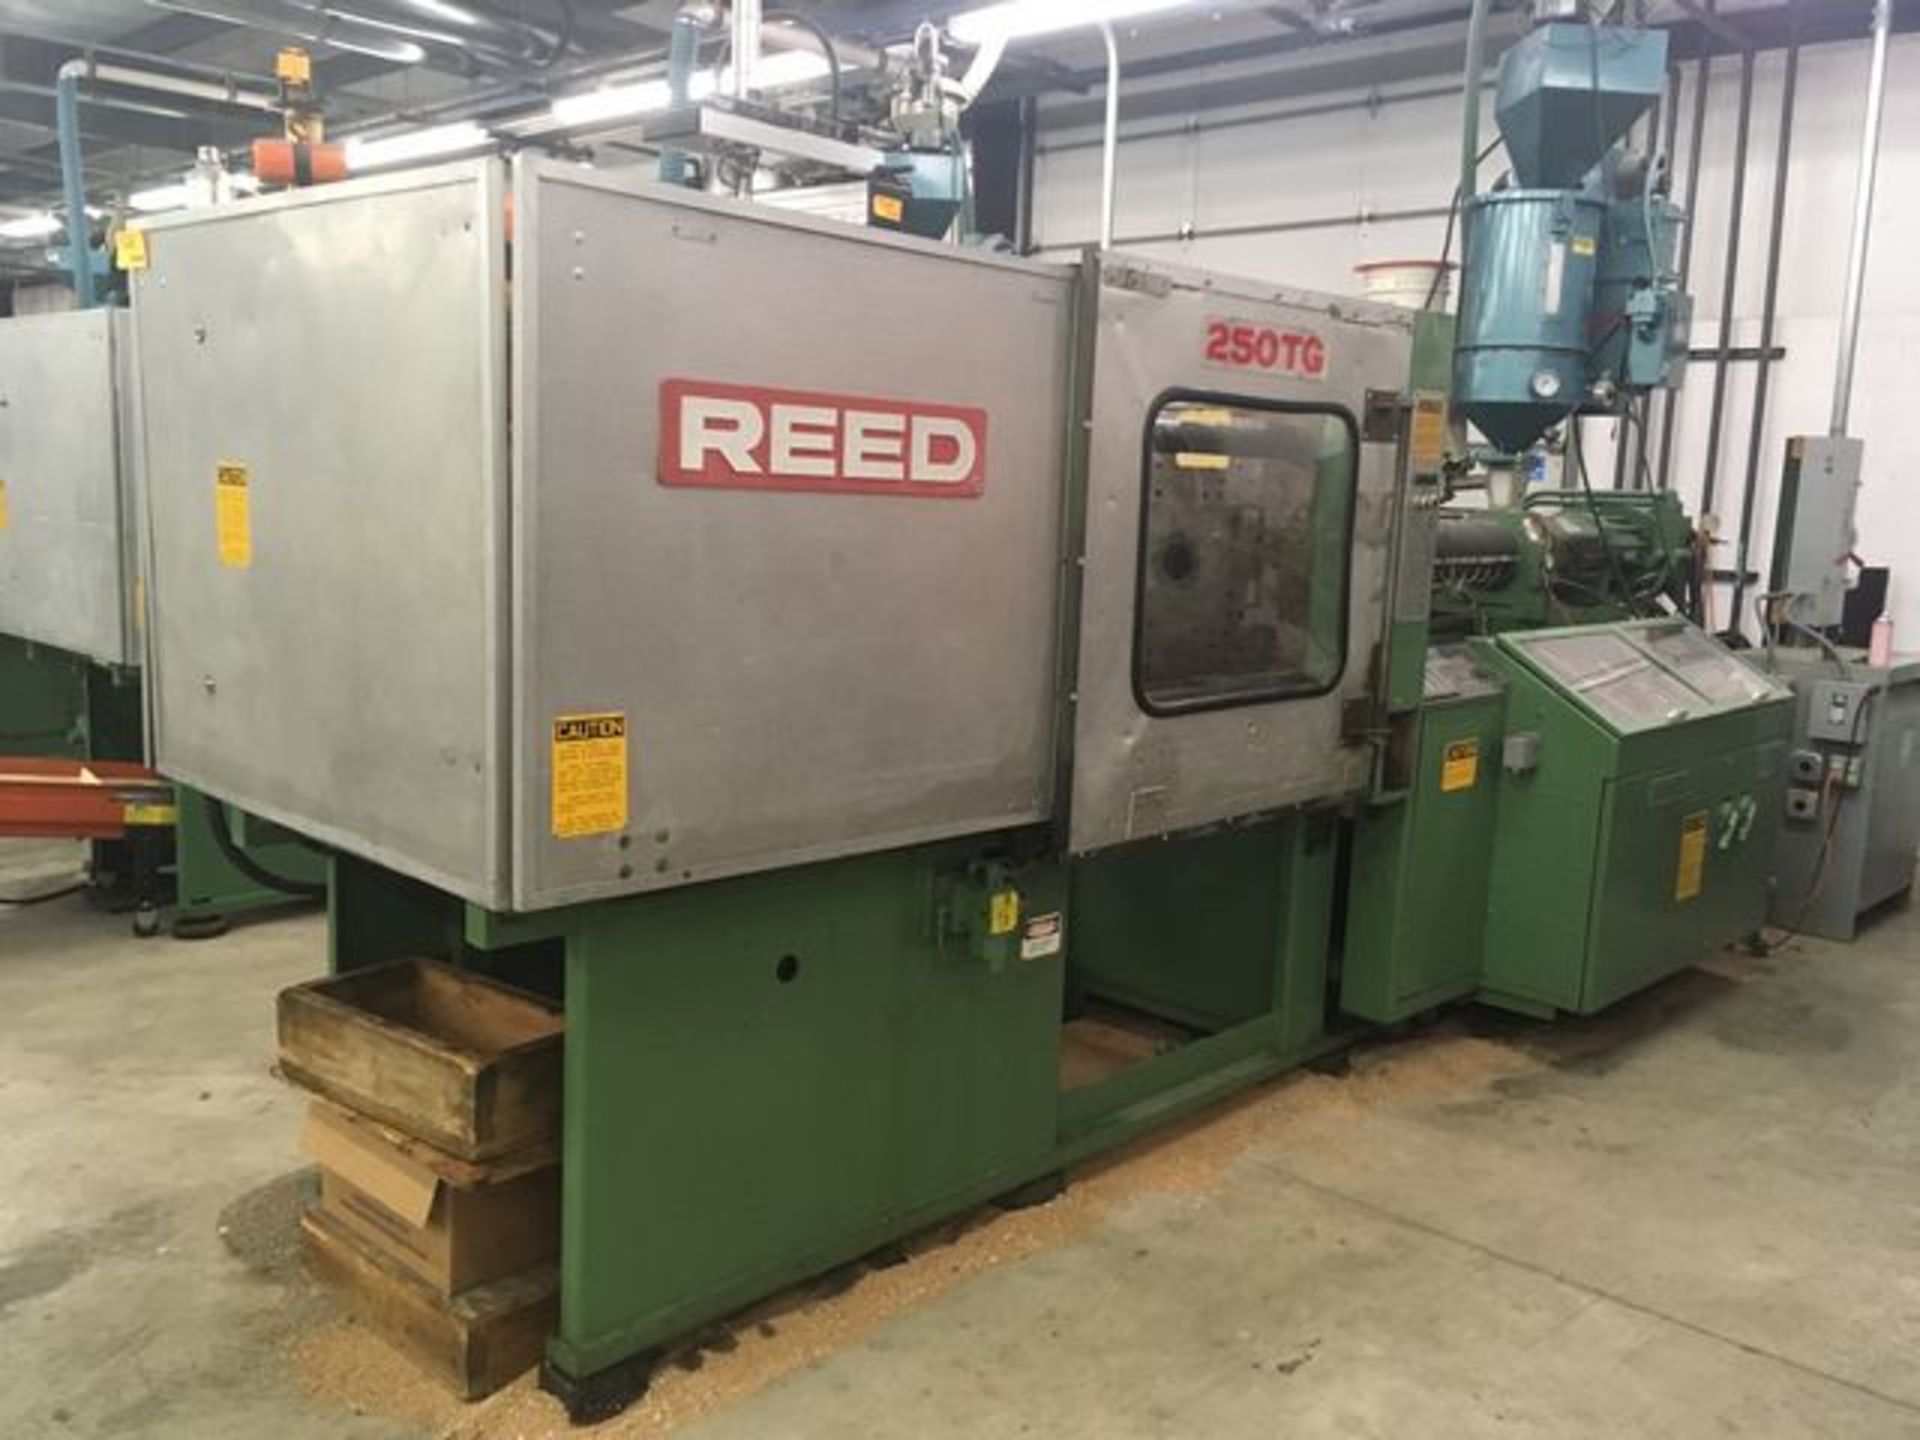 Reed 250 TG 250 Ton Injection Molding Machine - Image 2 of 7